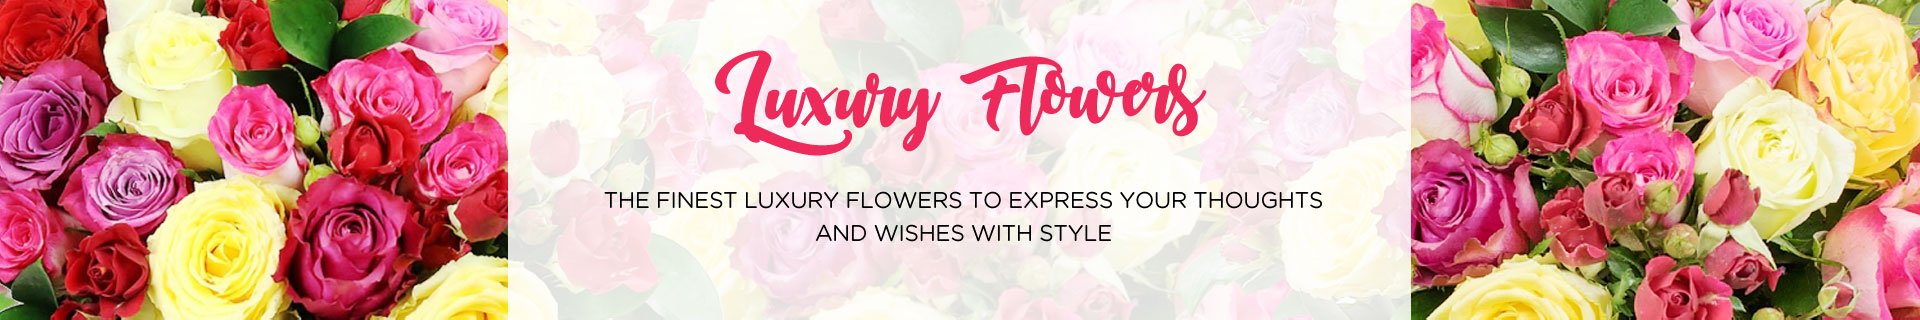 luxury-flowers.jpg